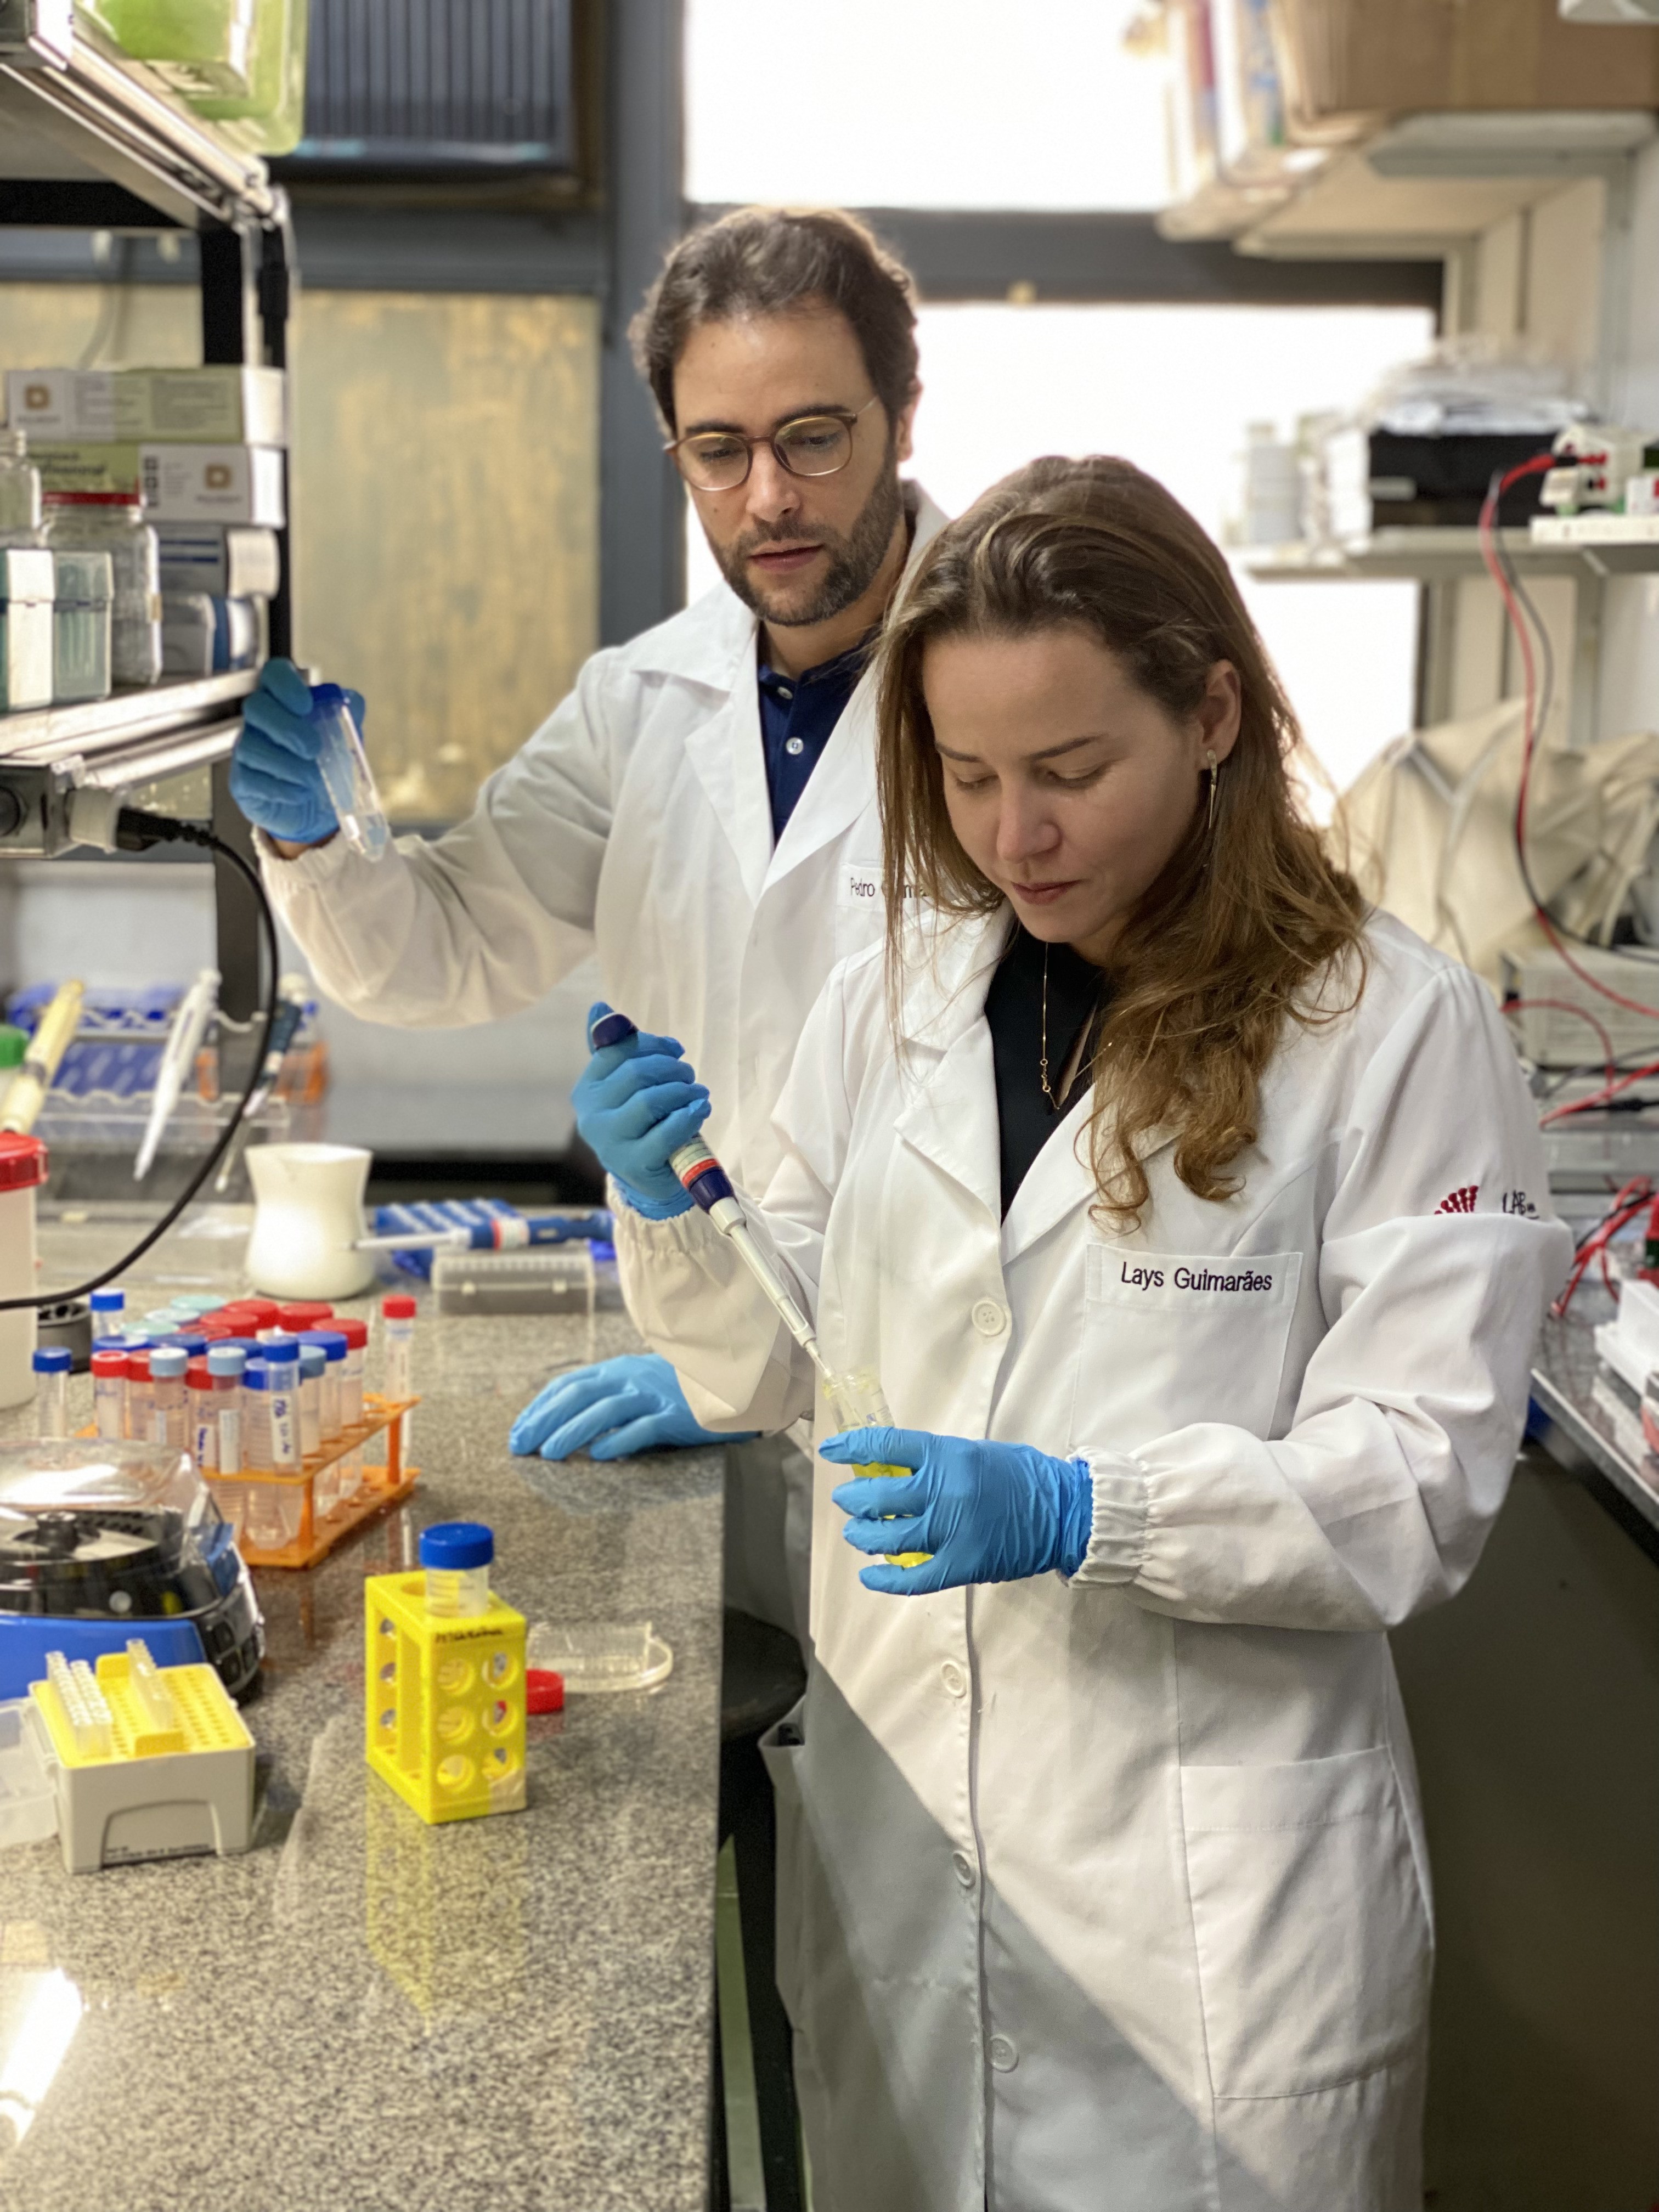 O professor Pedro Pires e a doutoranda Lays realizam testes no laboratório